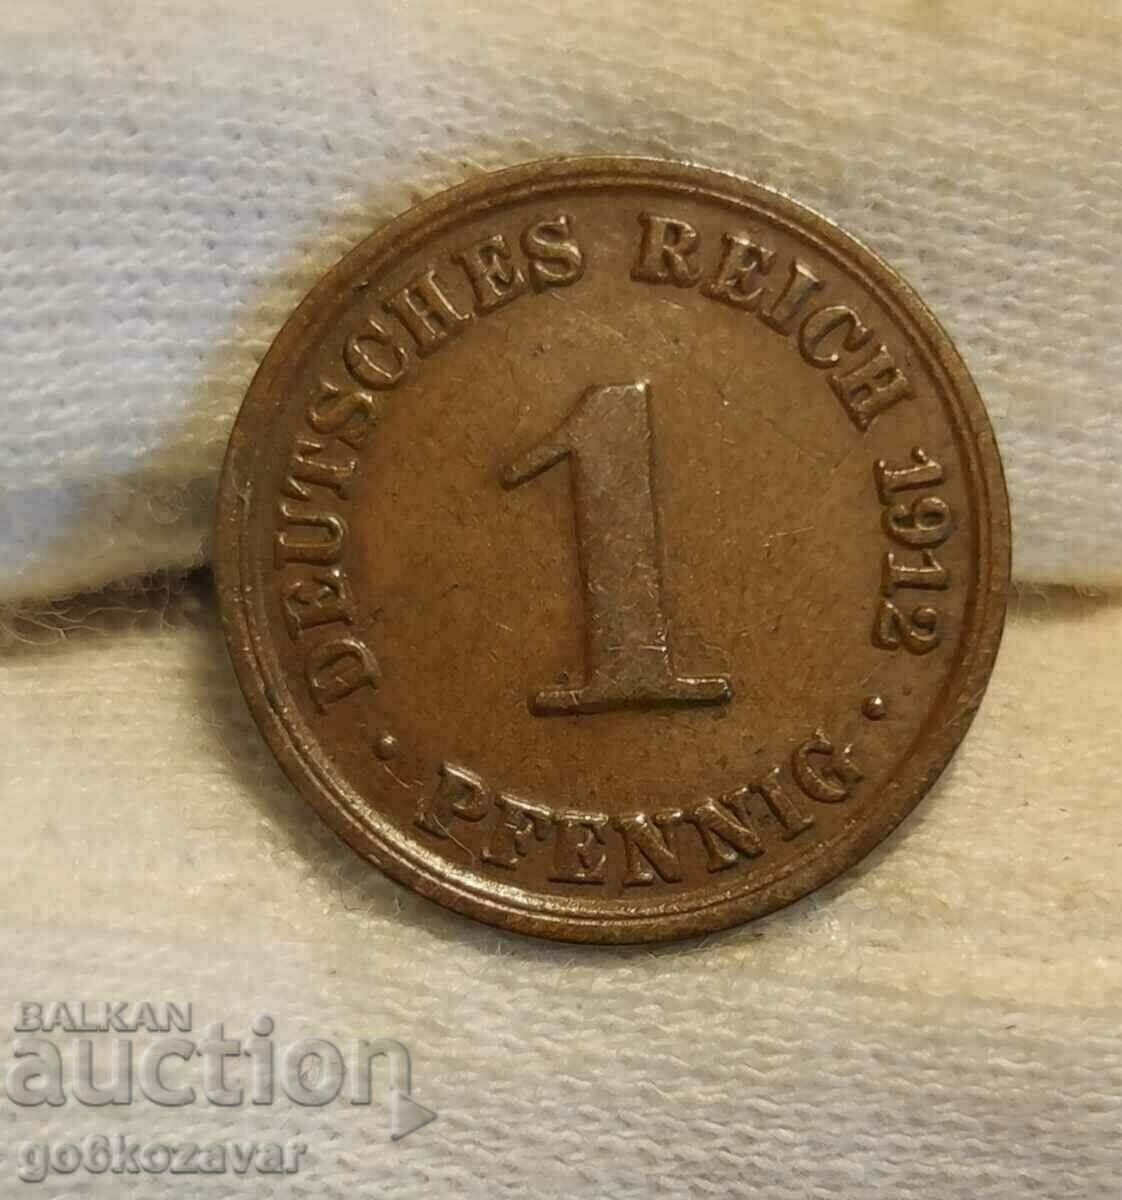 Germany 1 pfennig 1912